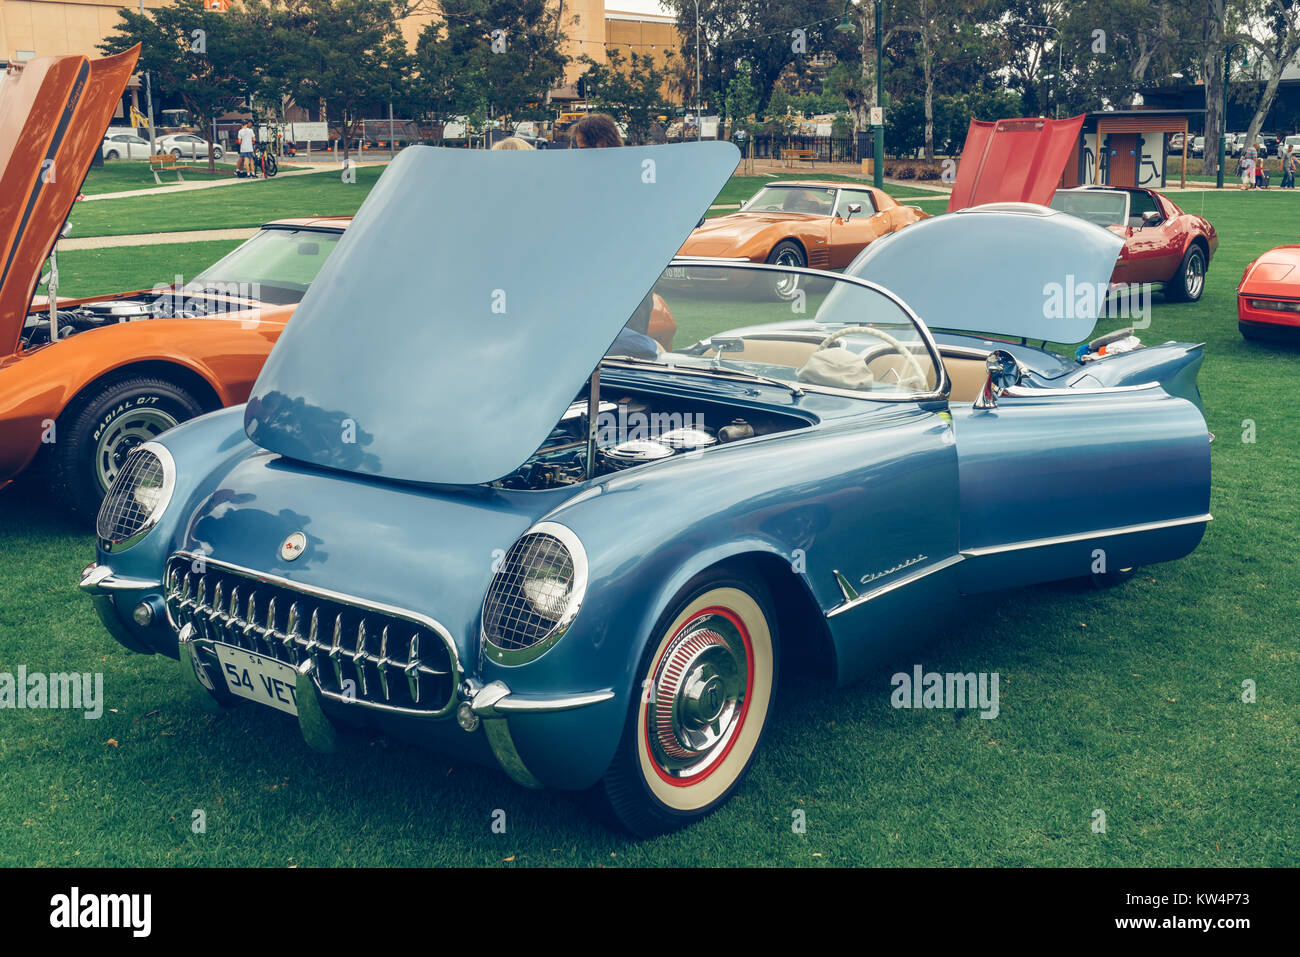 Une Corvette Car Show, l'Australie du Sud, Australie. Banque D'Images